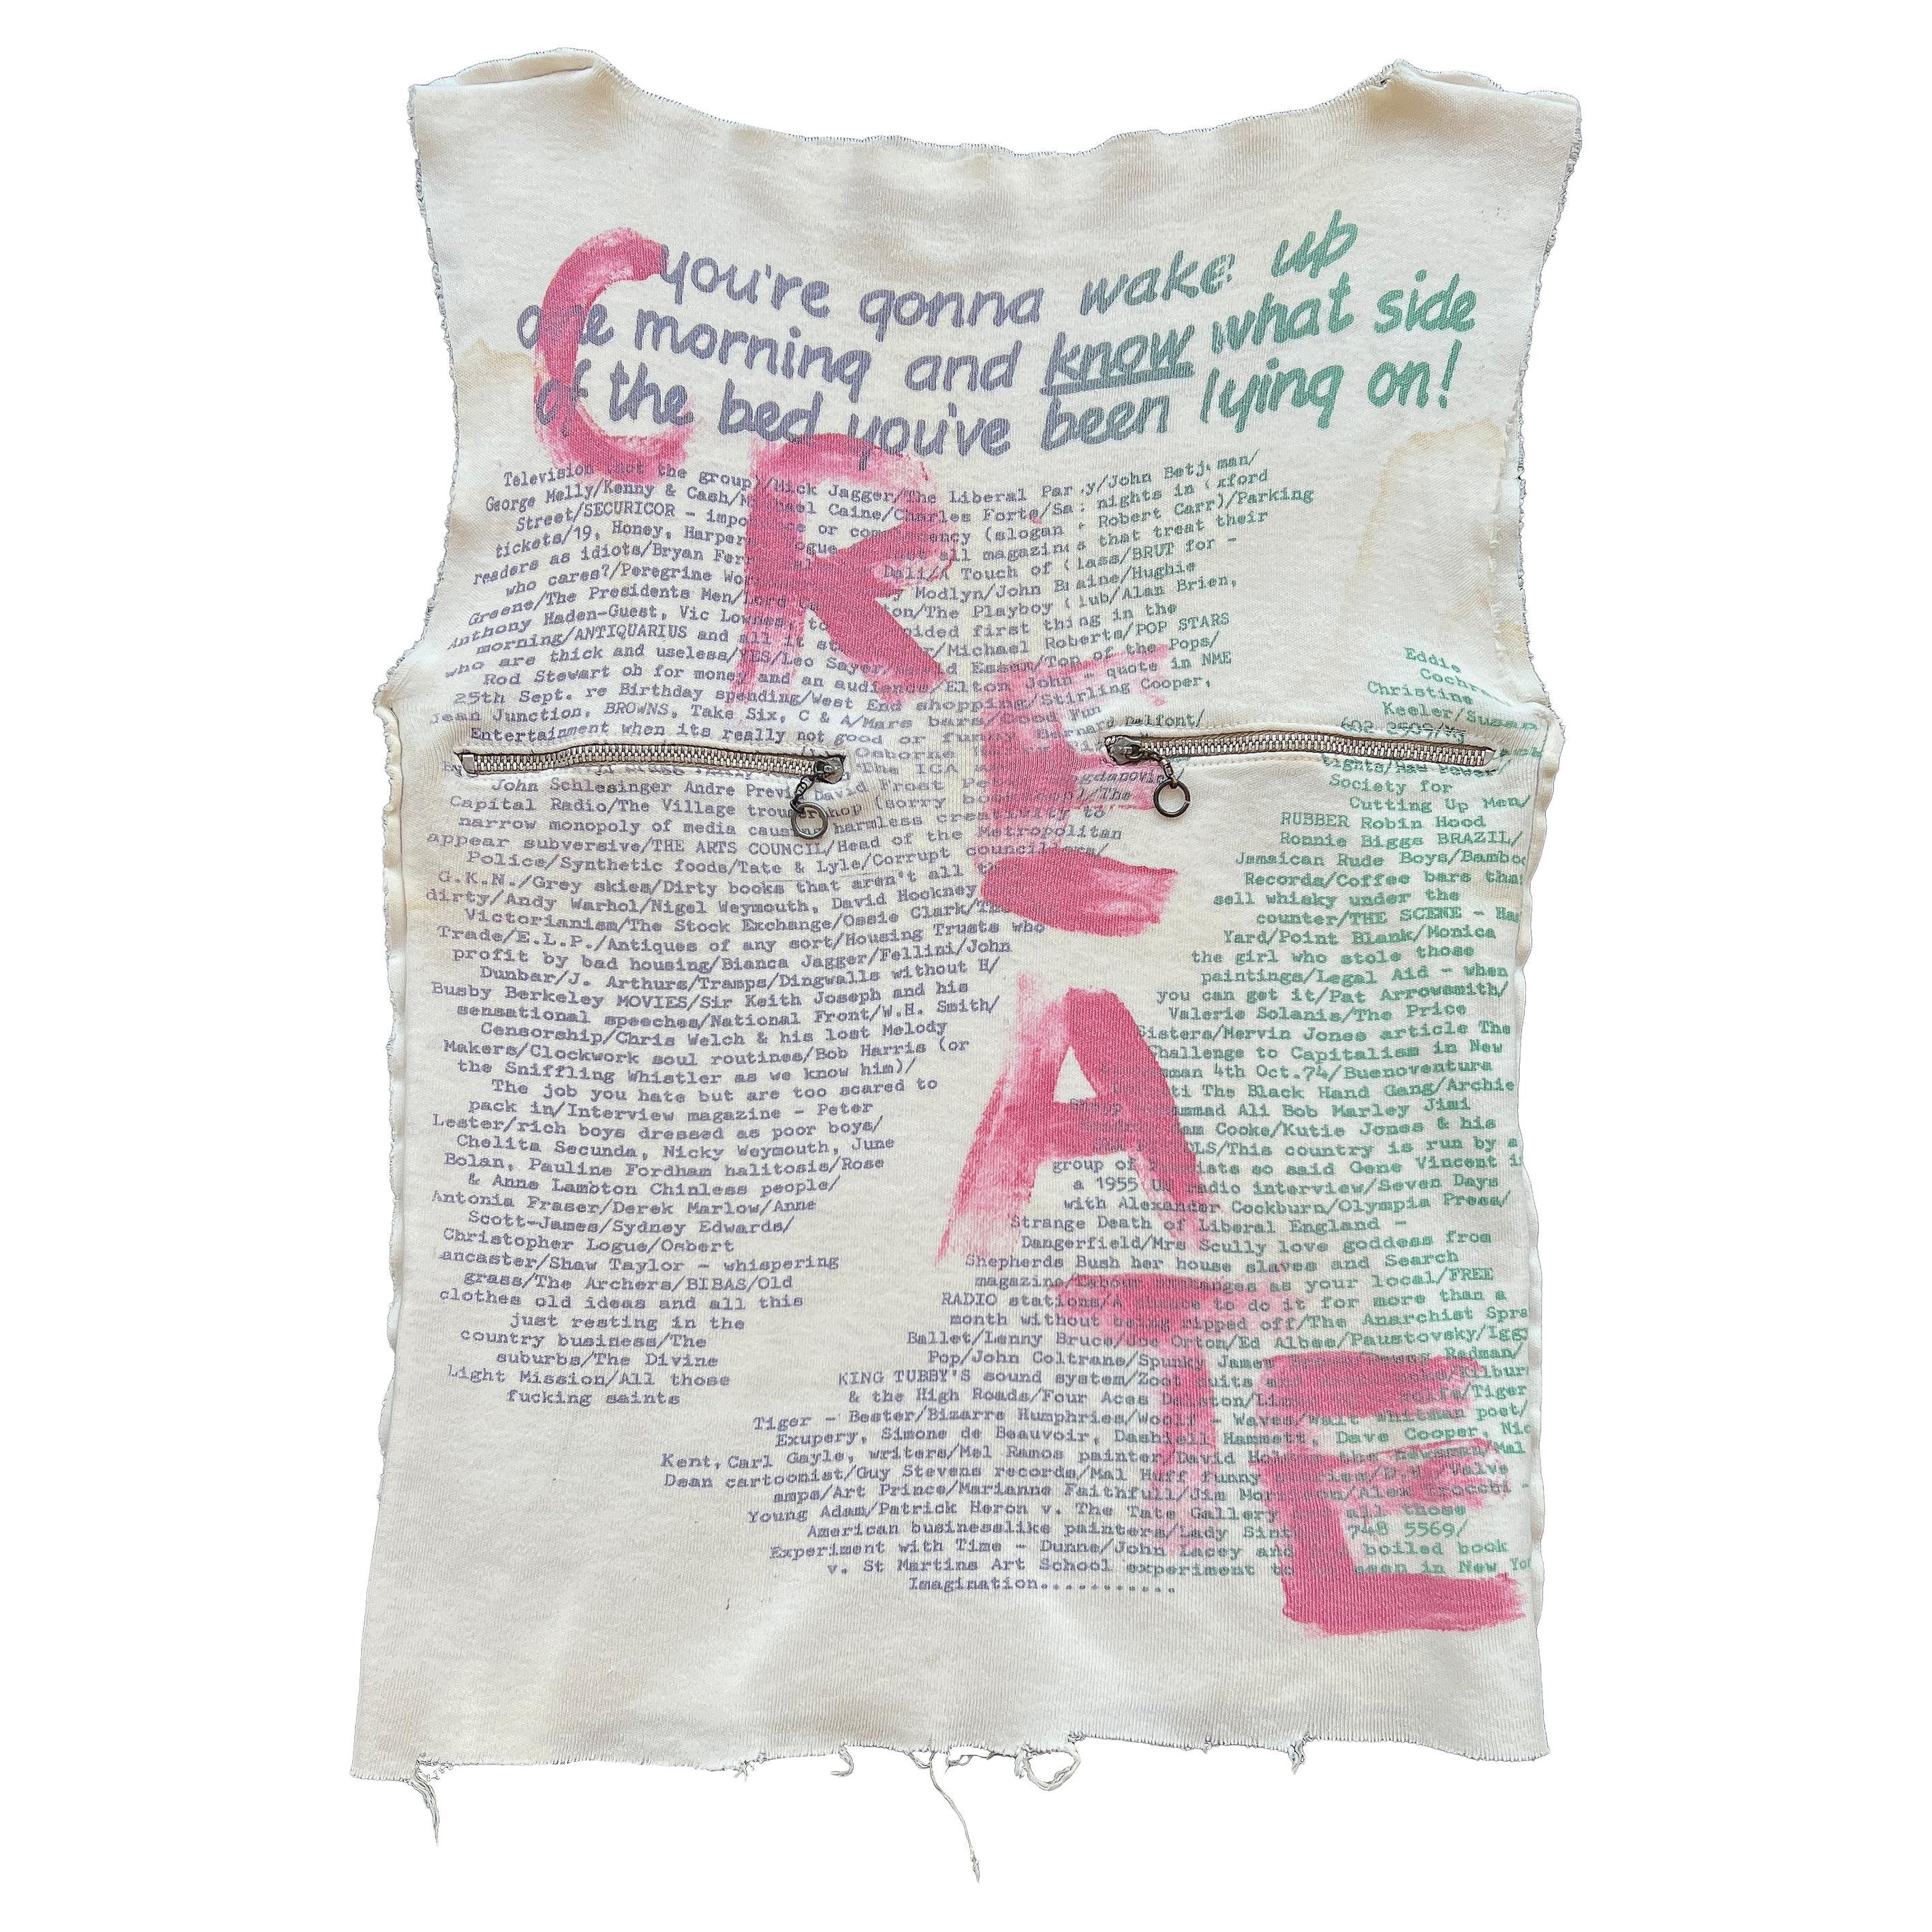 Vivienne Westwood & Malcolm McLaren SEX "Create" Punk T-Shirt 1975-76 For Sale